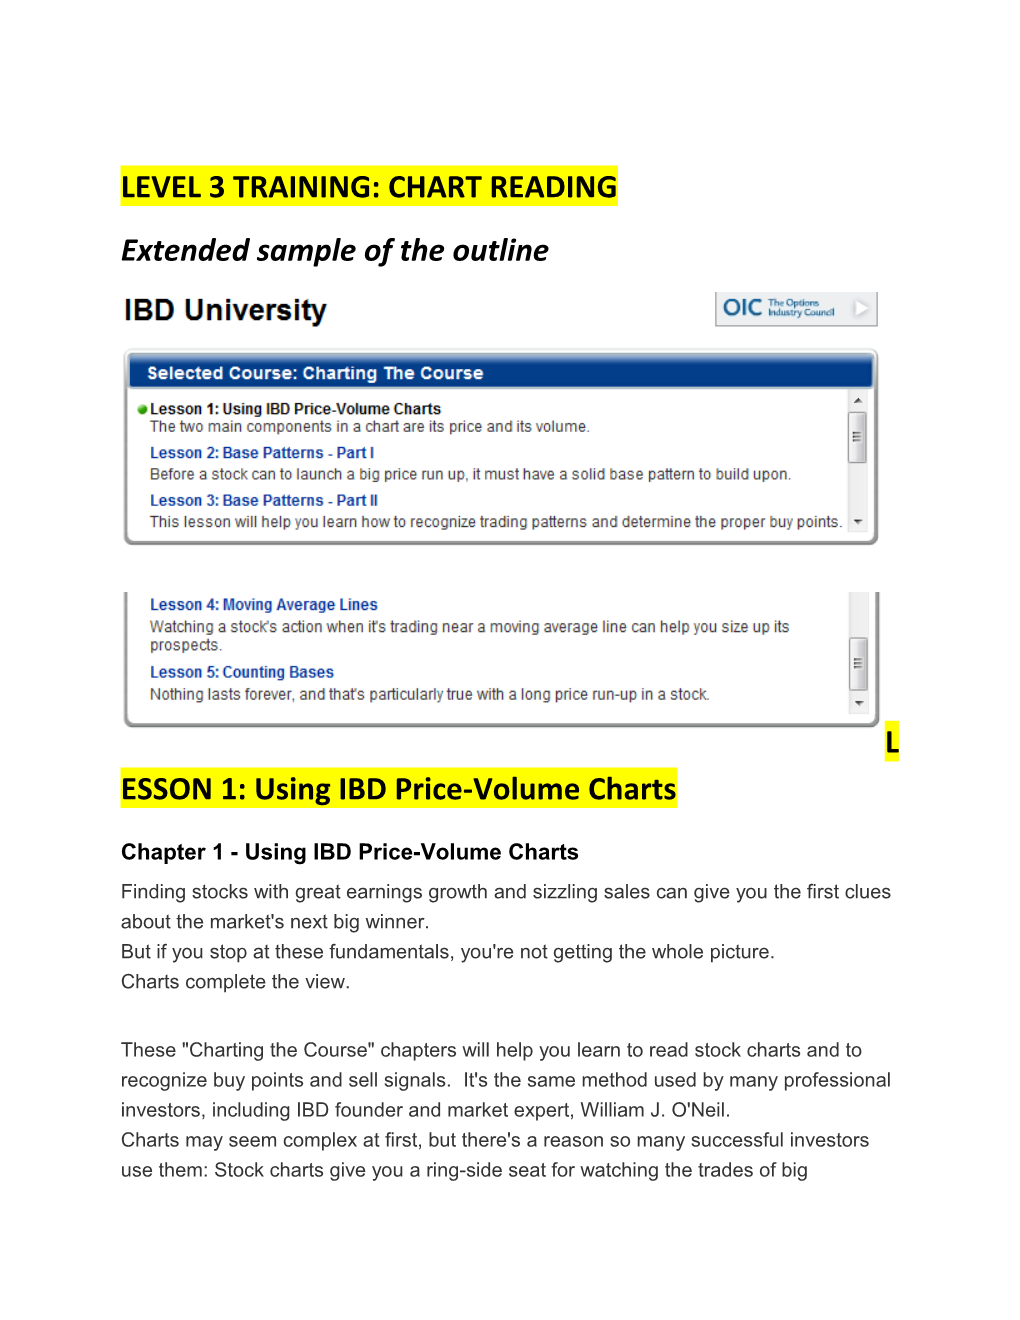 Level 3 Training: Chart Reading